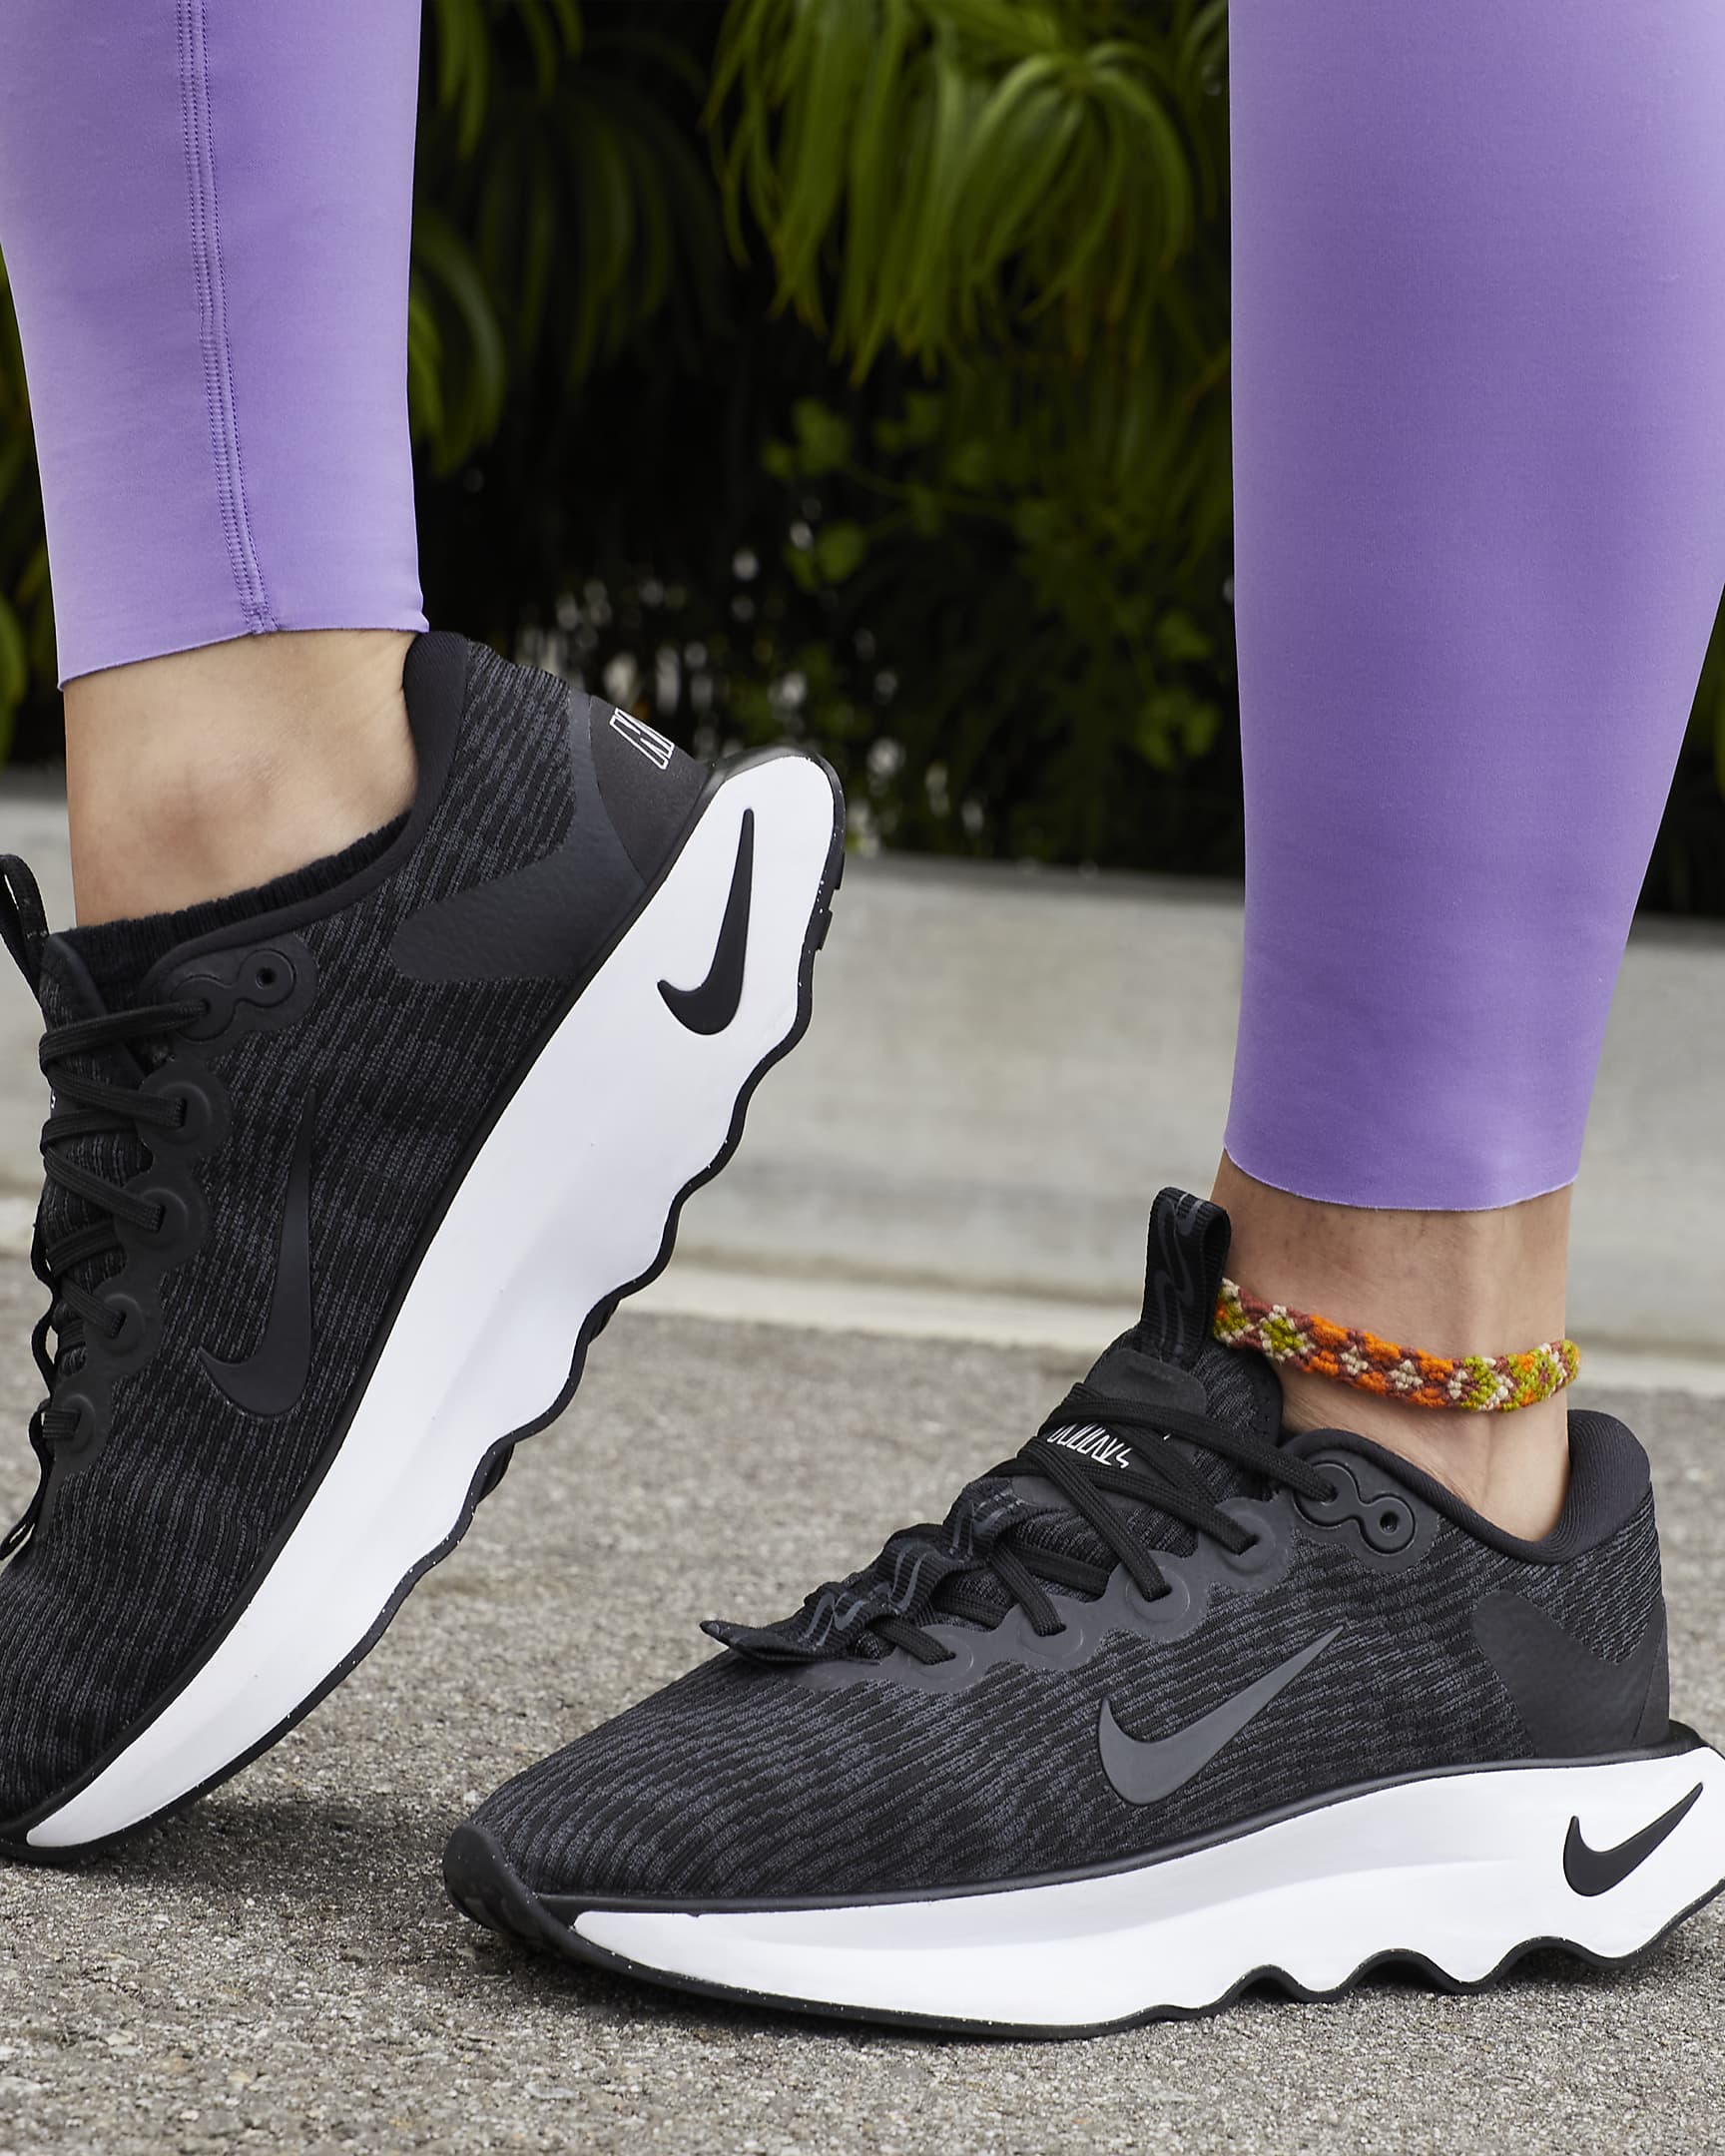 Tenis de caminata para mujer Nike Motiva - Negro/Antracita/Blanco/Negro